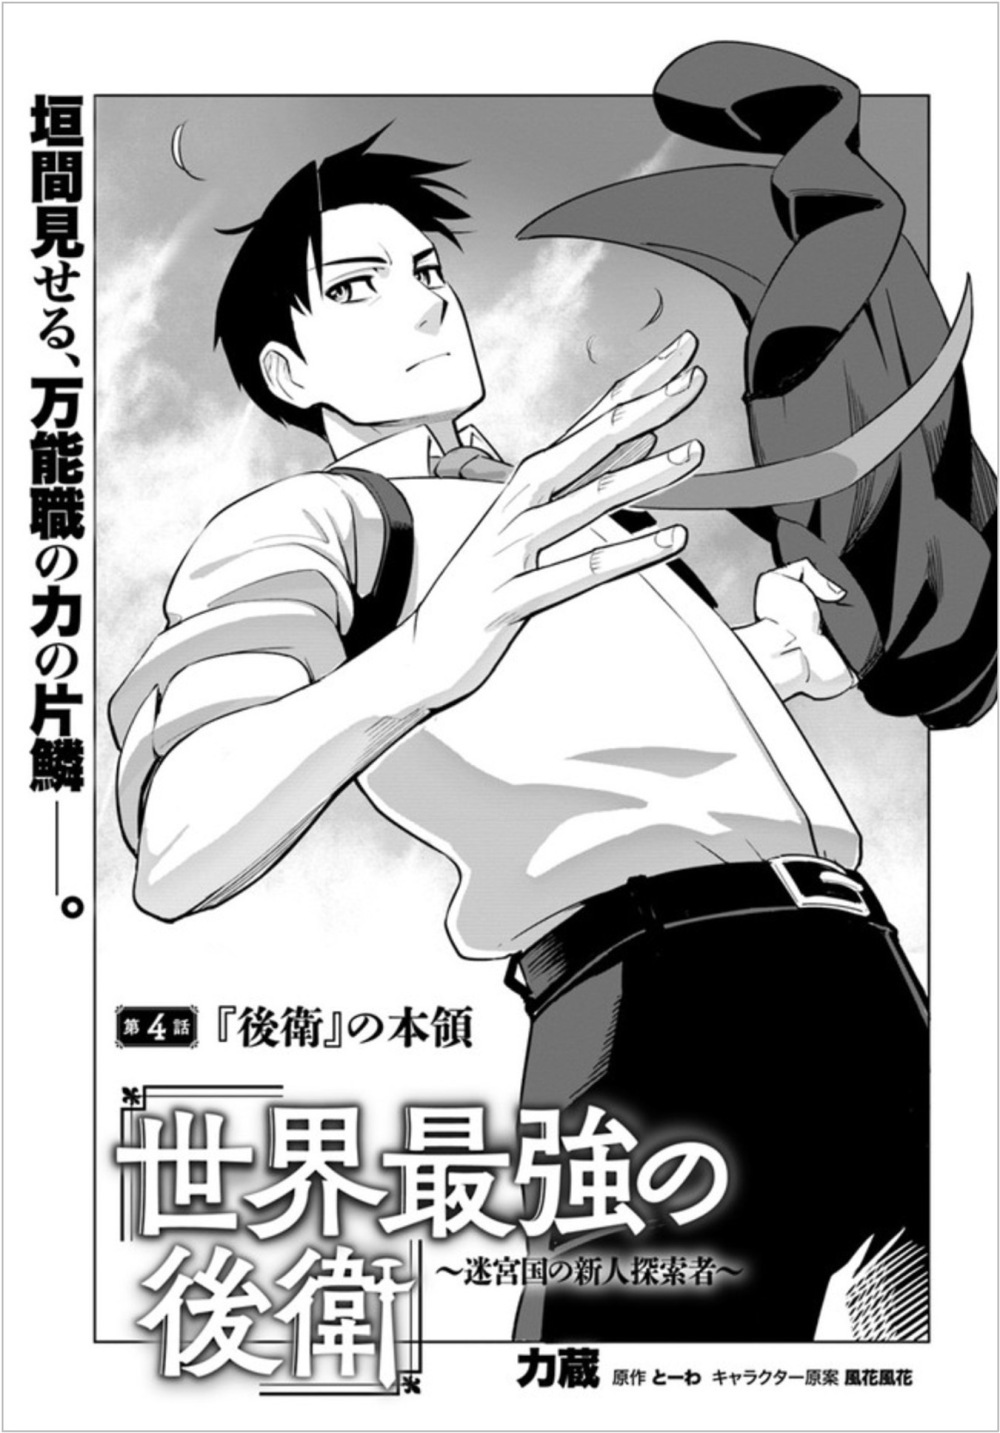 Sekai Saikyou no Kouei: Meikyuukoku no Shinjin Tansakusha Vol. 1 Ch. 4